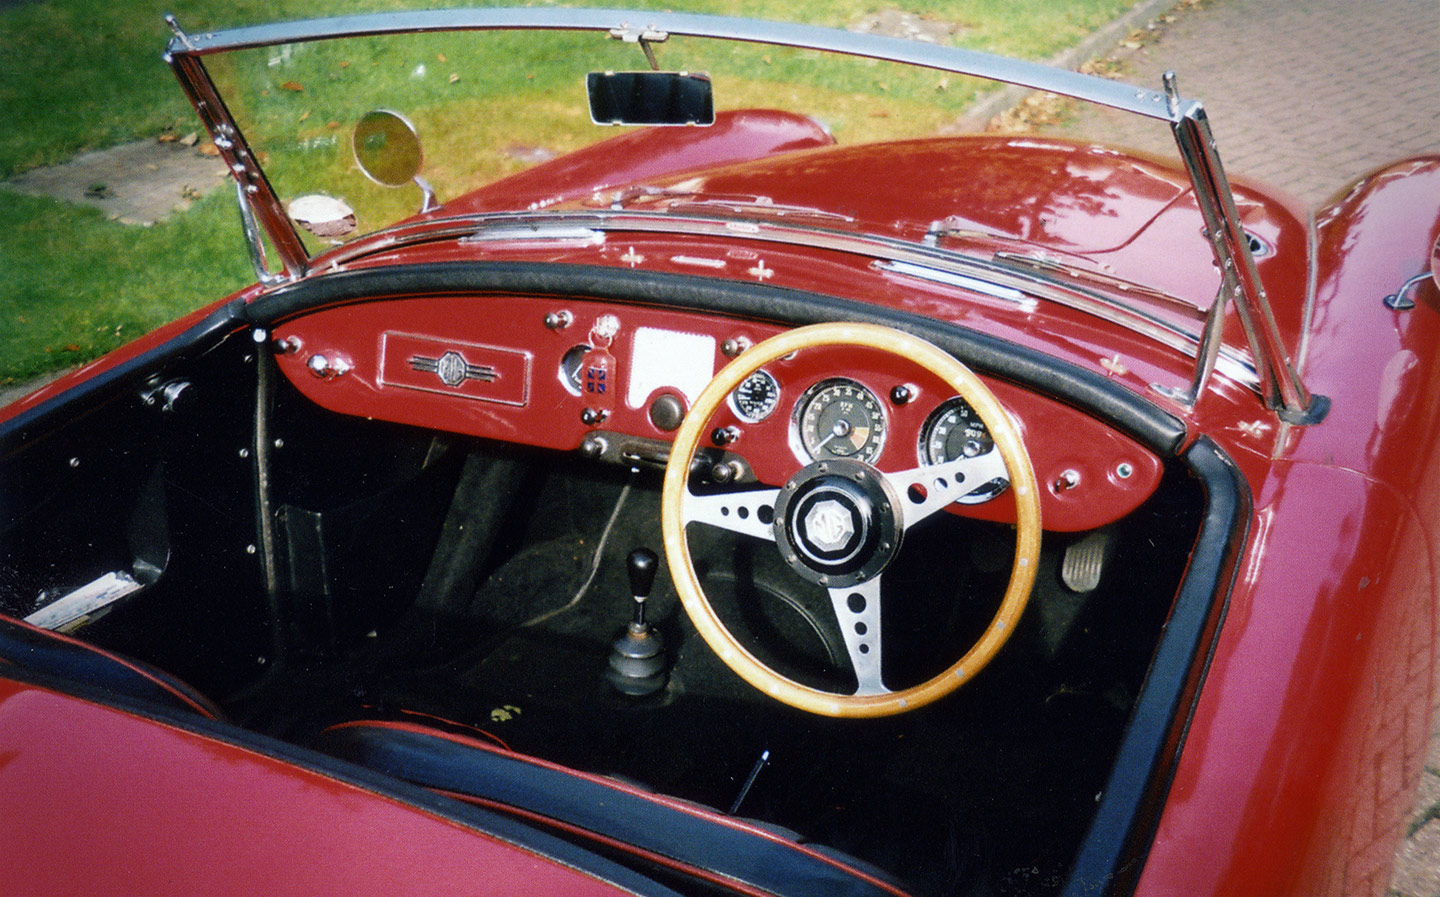 1960 MGA interior dashboard